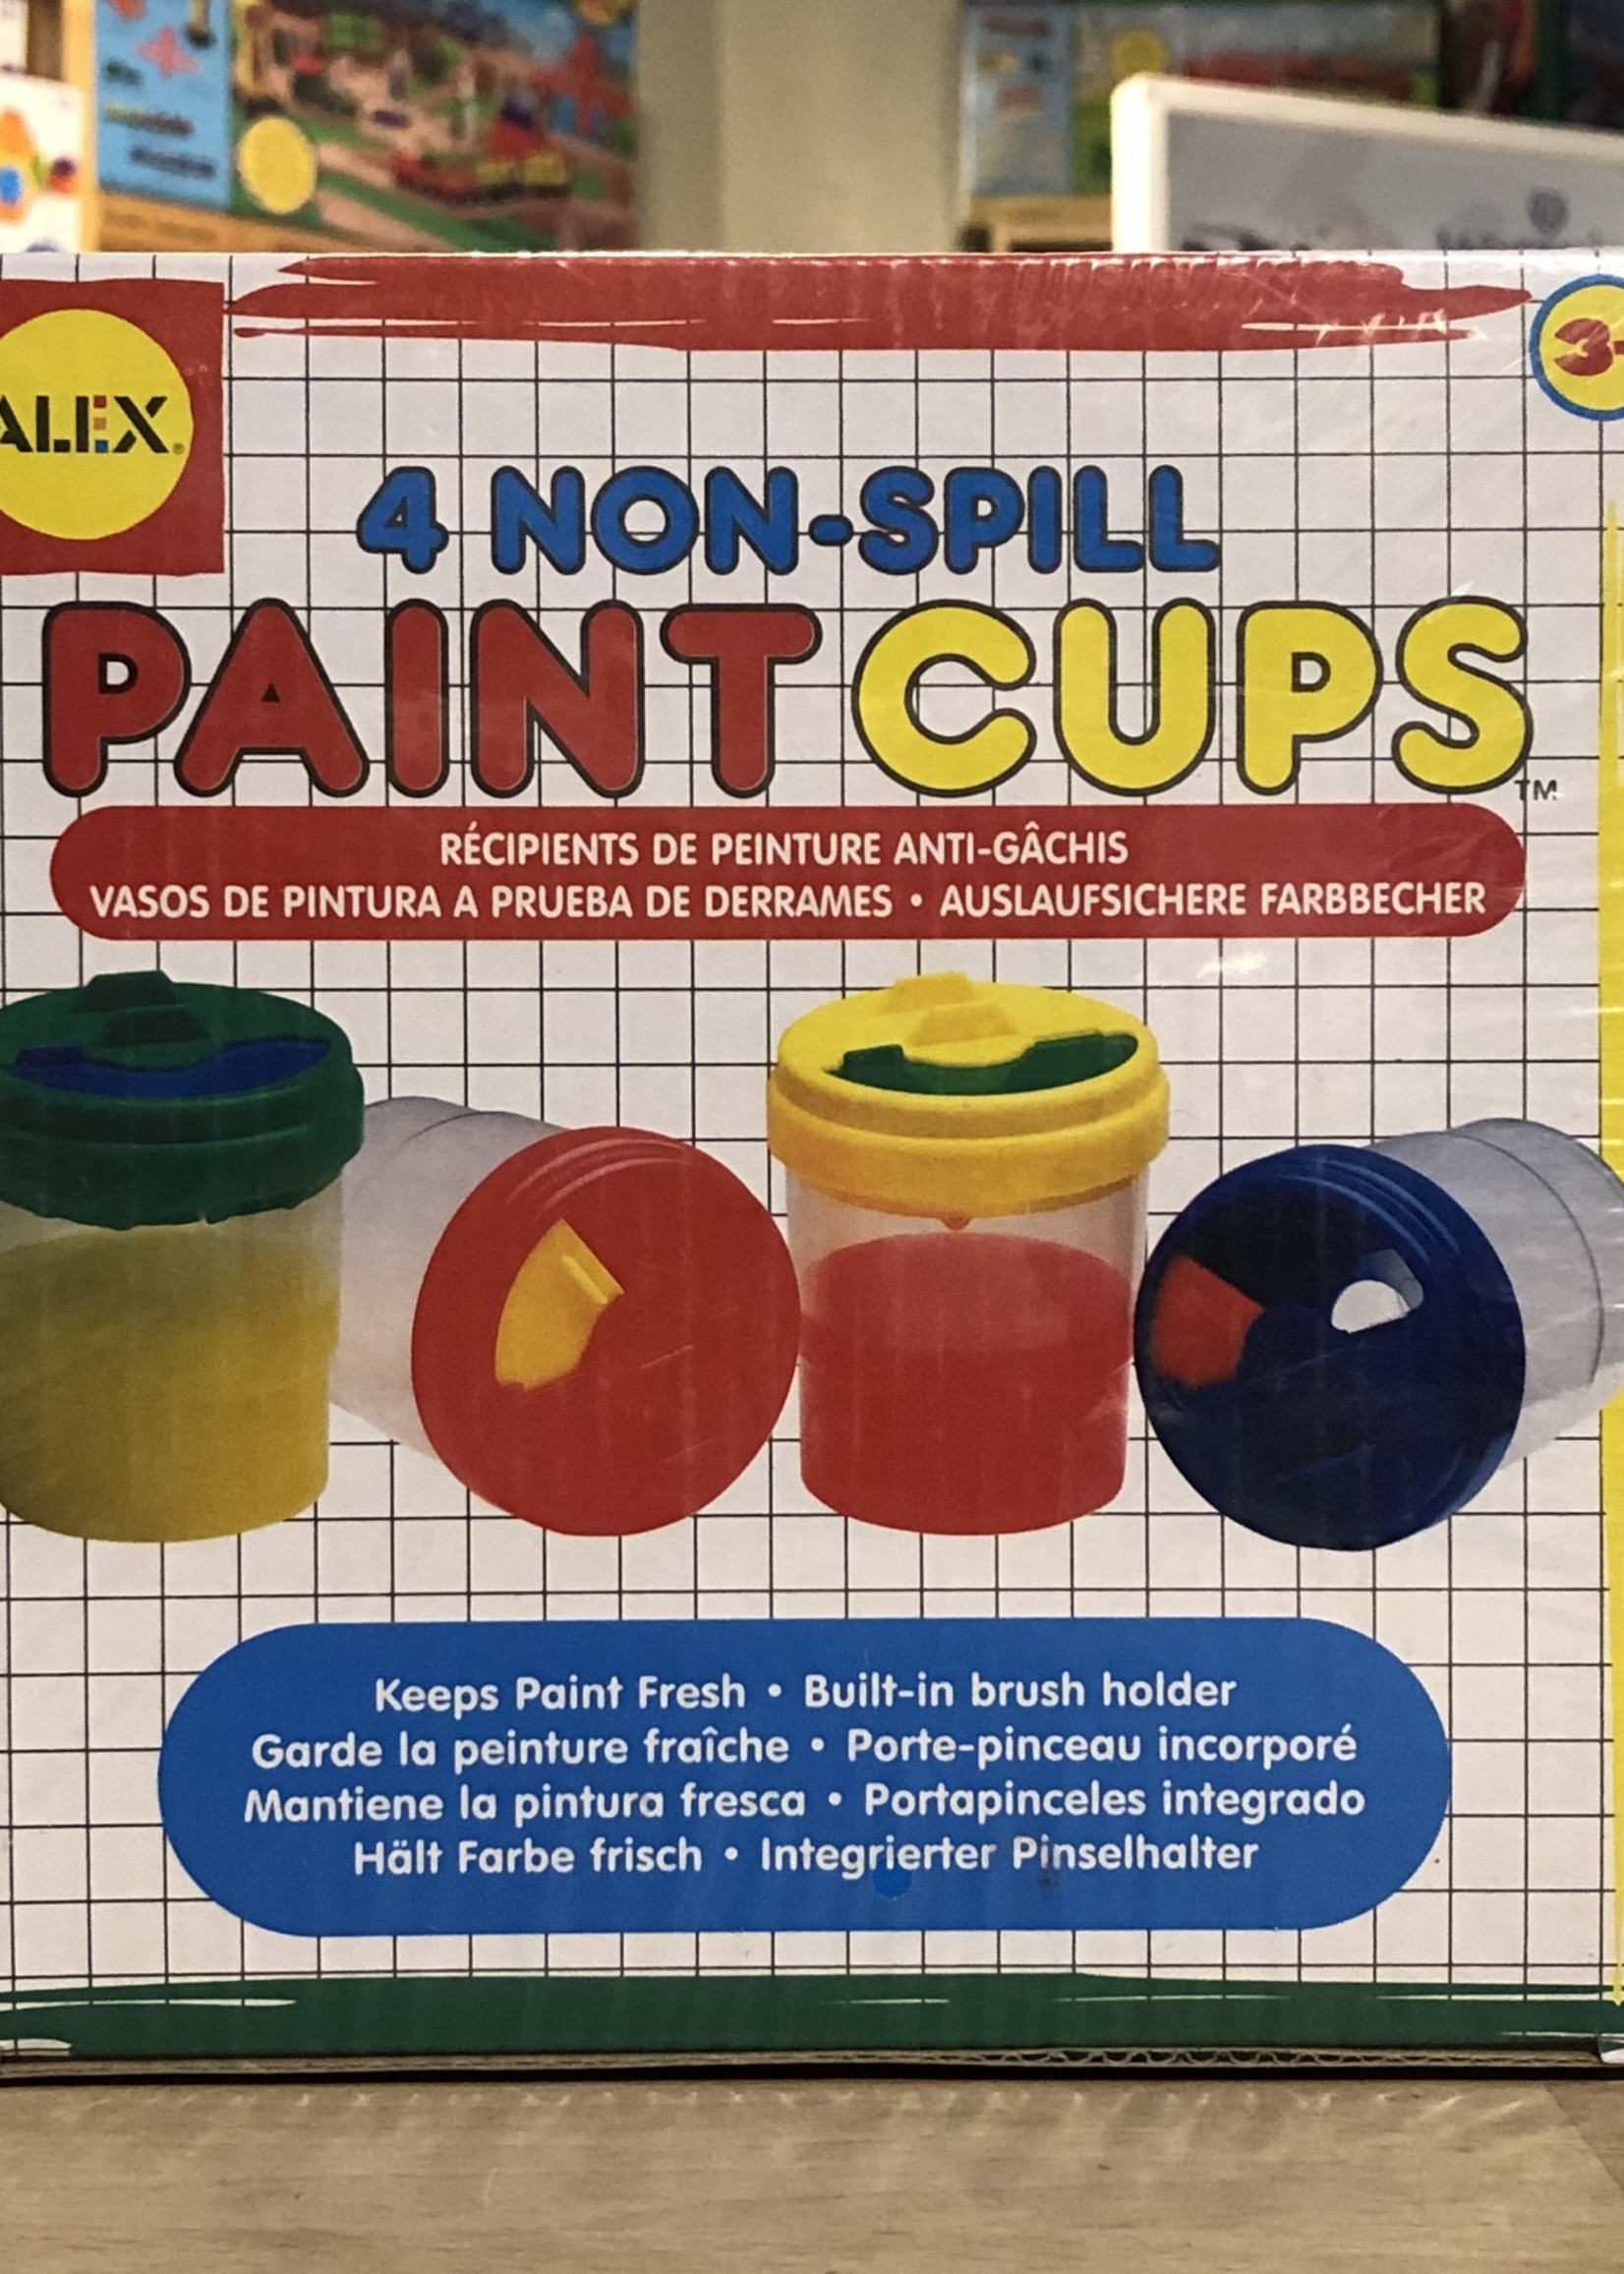 Paint cups